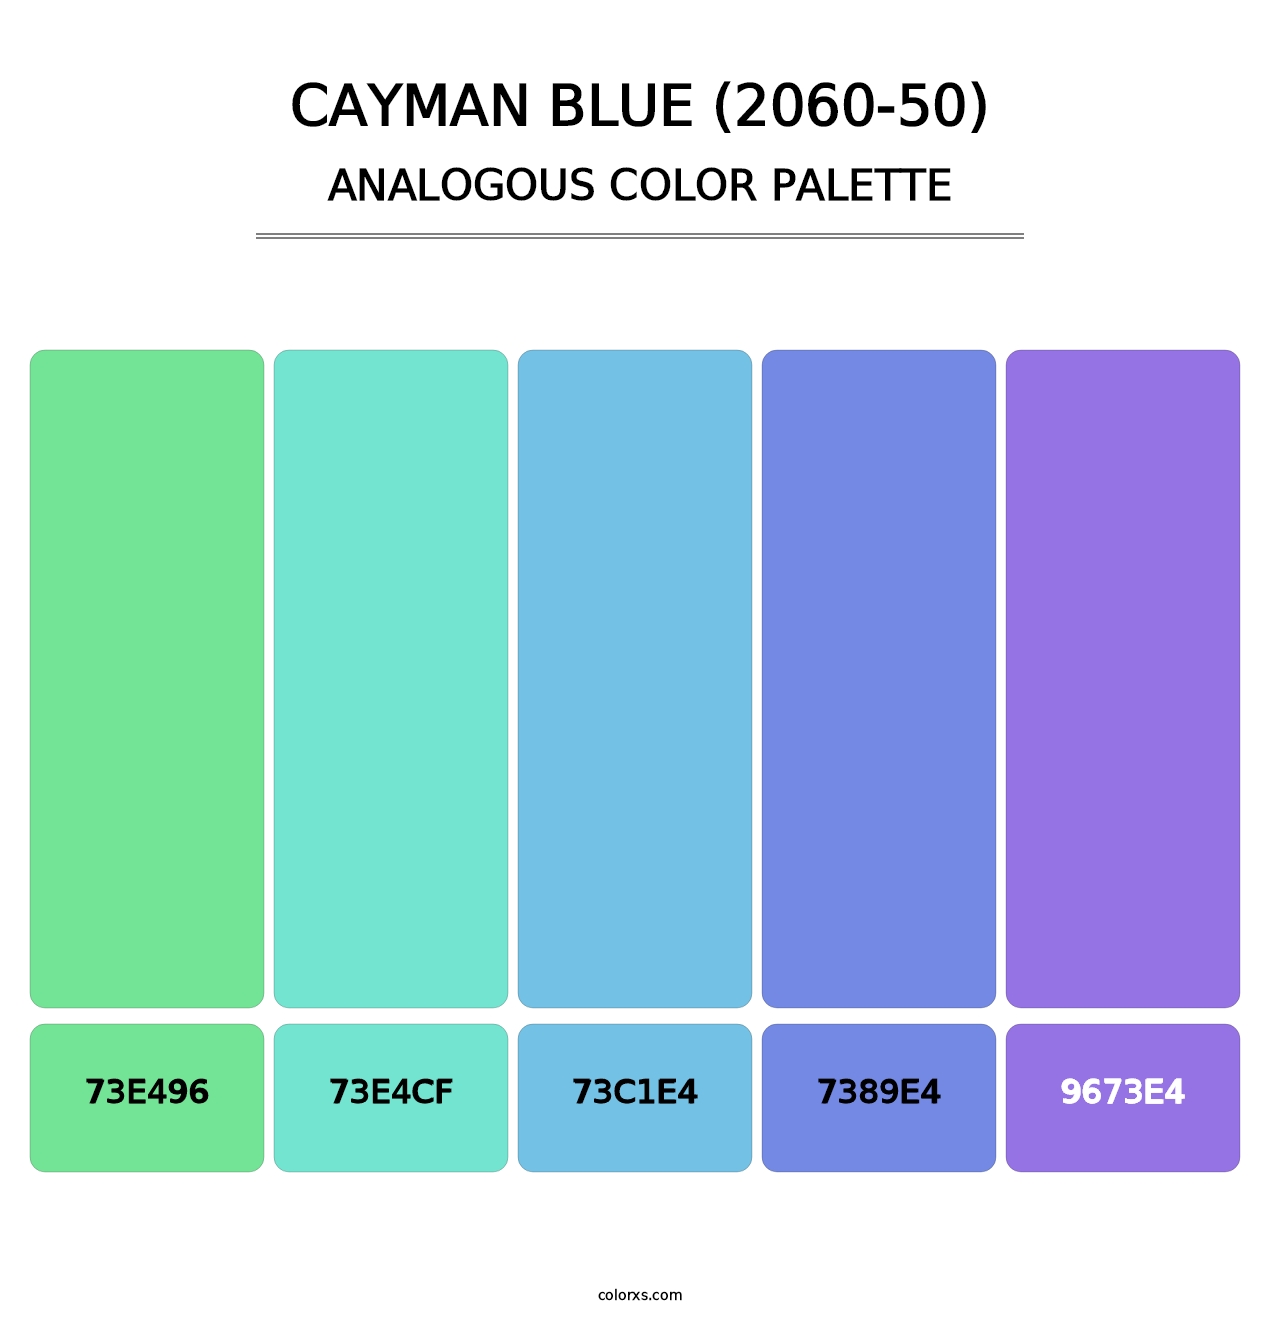 Cayman Blue (2060-50) - Analogous Color Palette